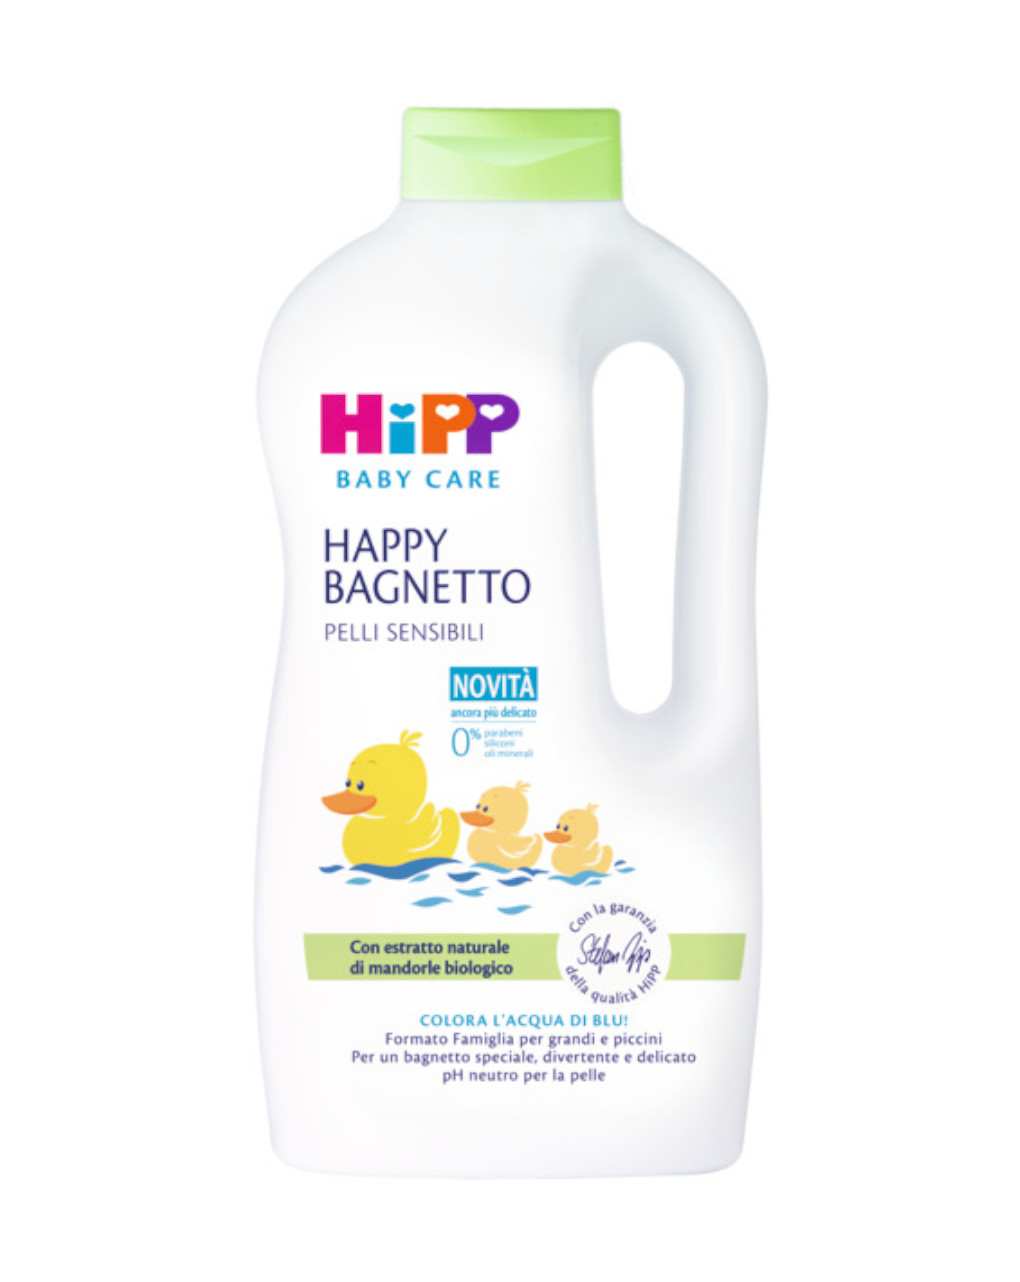 Happy bagnetto formato famiglia 1000ml - hipp